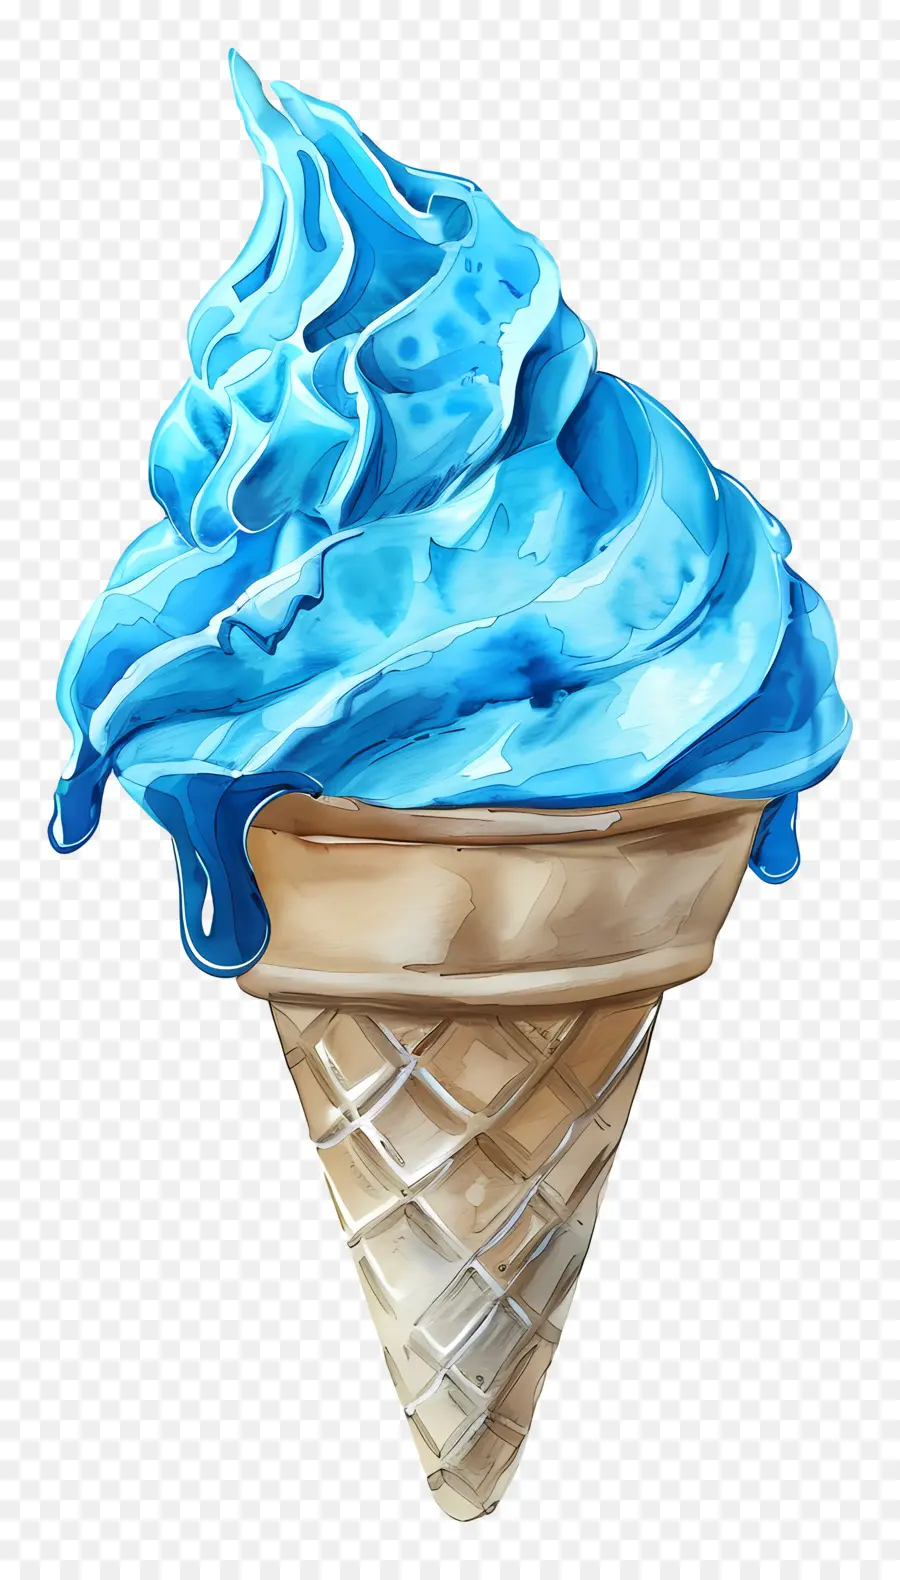 gelato blu gelato blu gelato cono gelido consistenza - Cono di gelato blu con consistenza acquosa